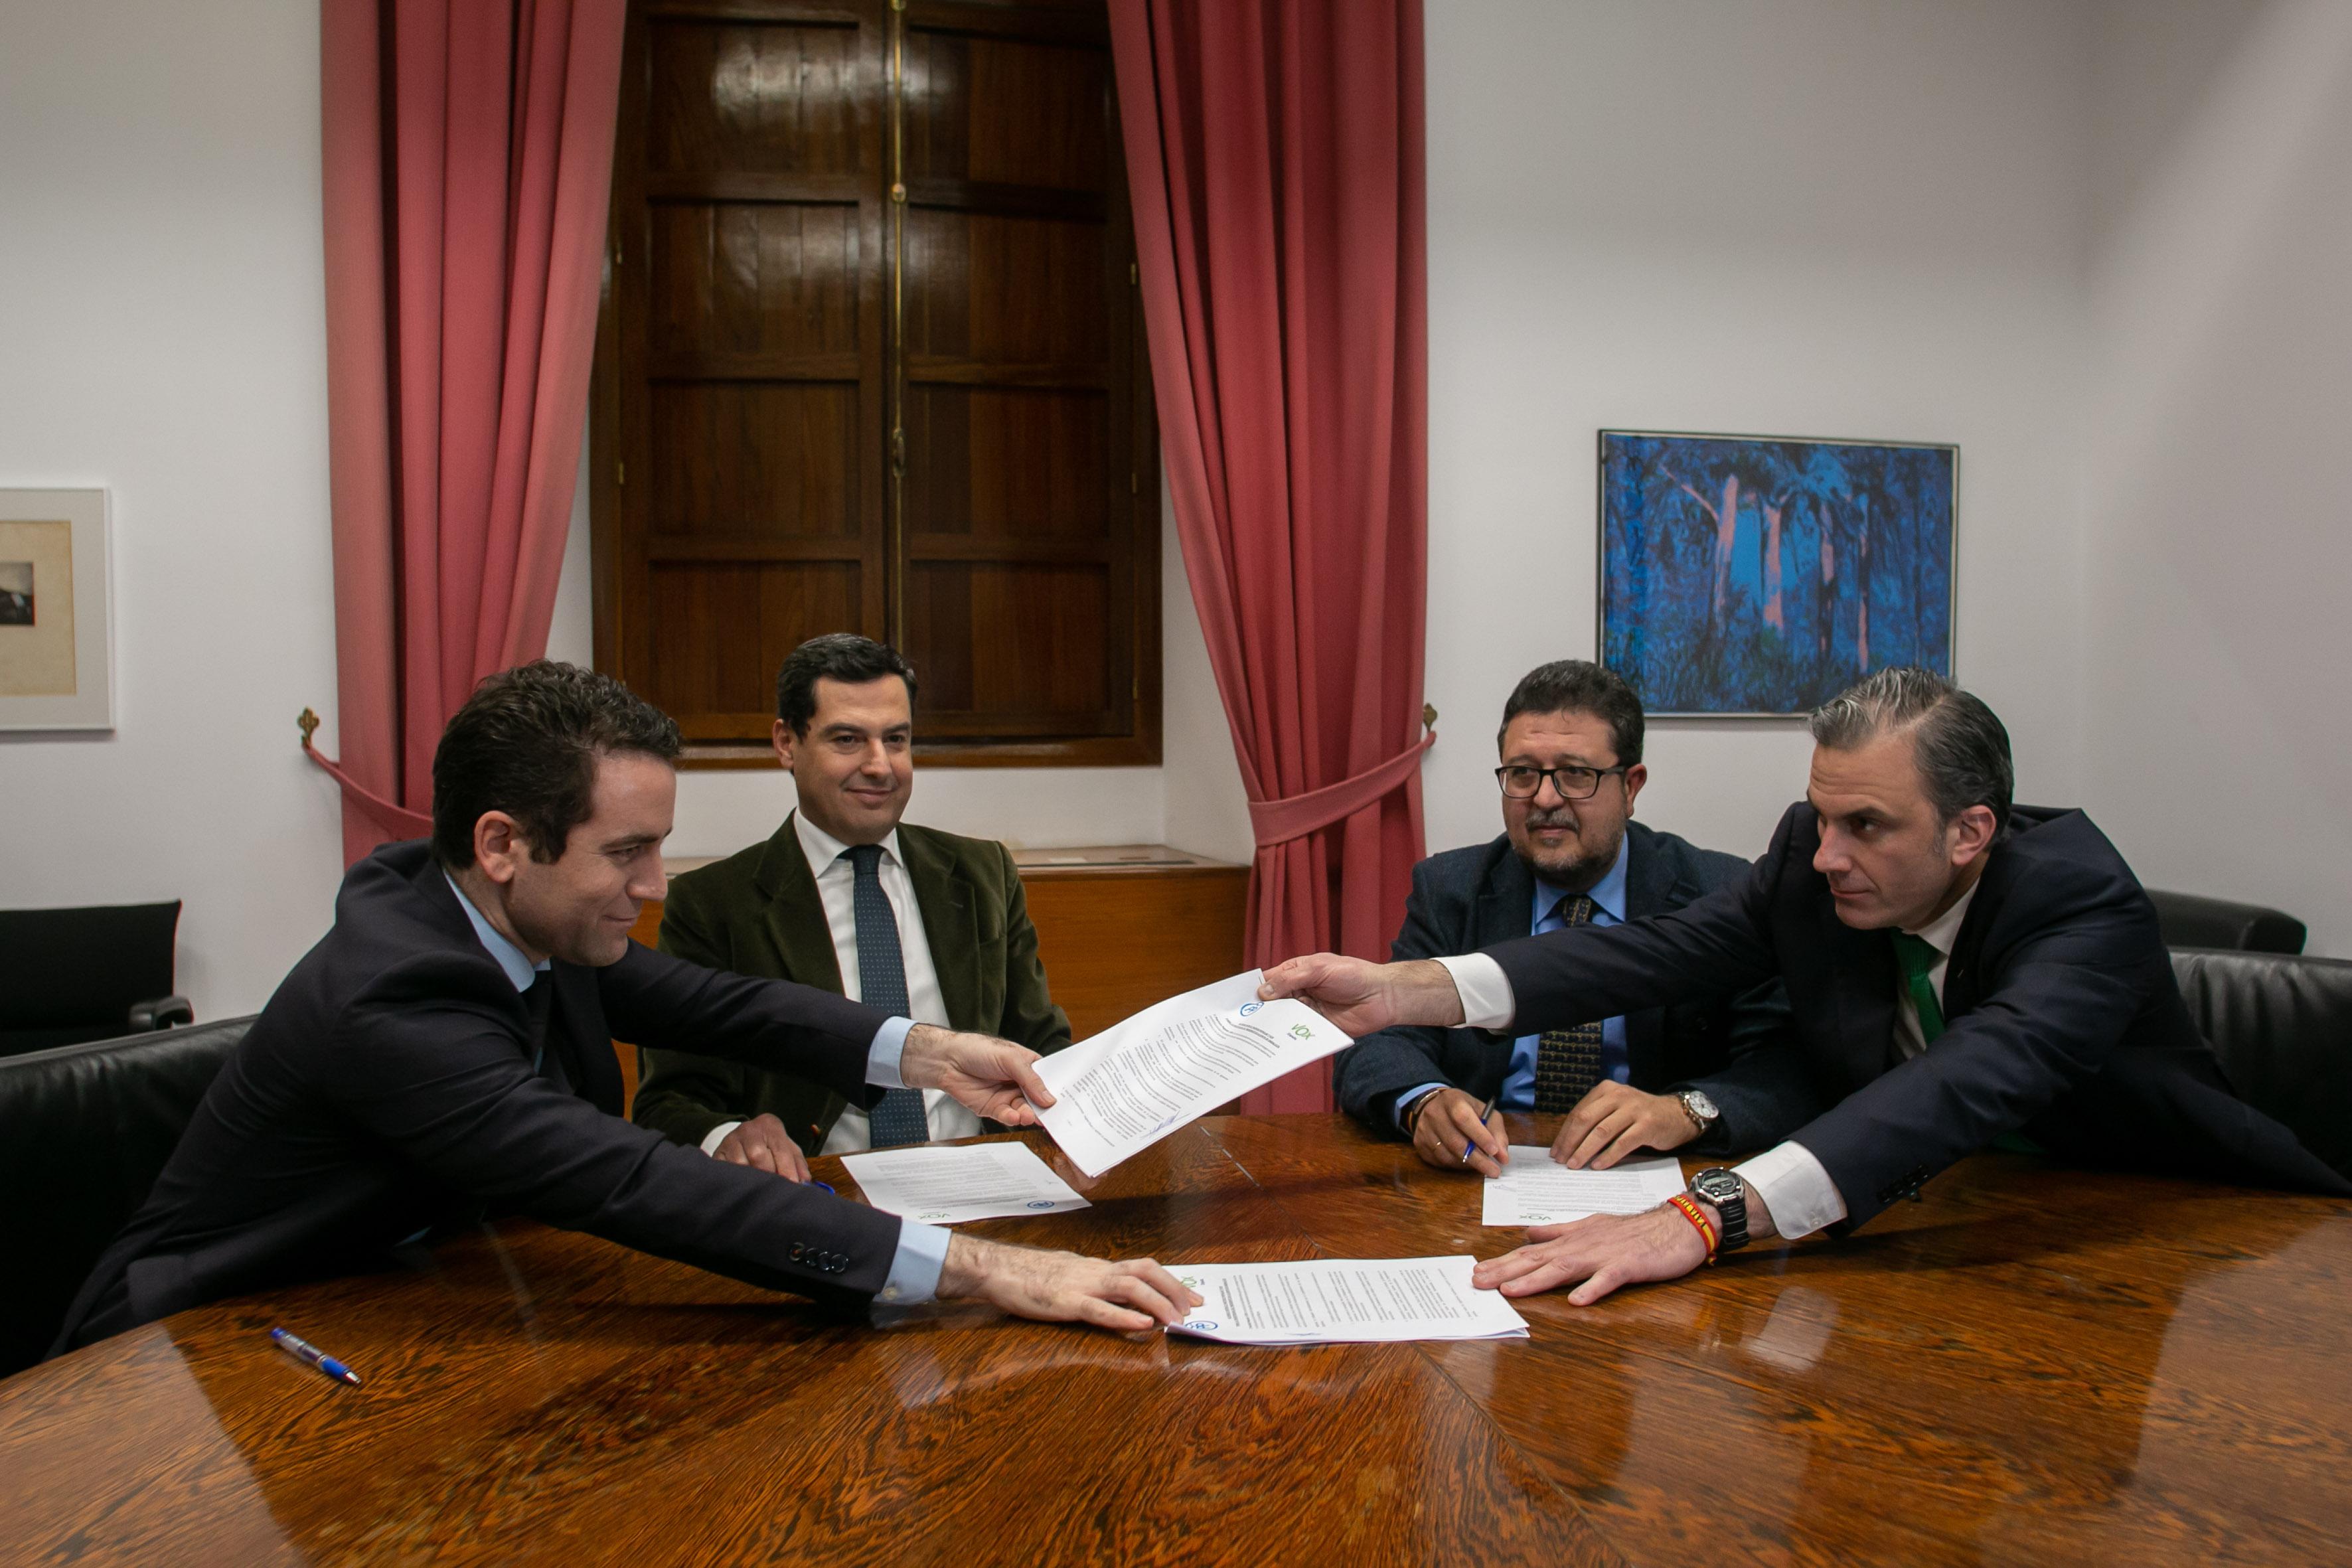 Juanma Moreno, Teodoro García Egea, Francisco Serrano y Javier Ortega firmando el acuerdo PP-Vox.